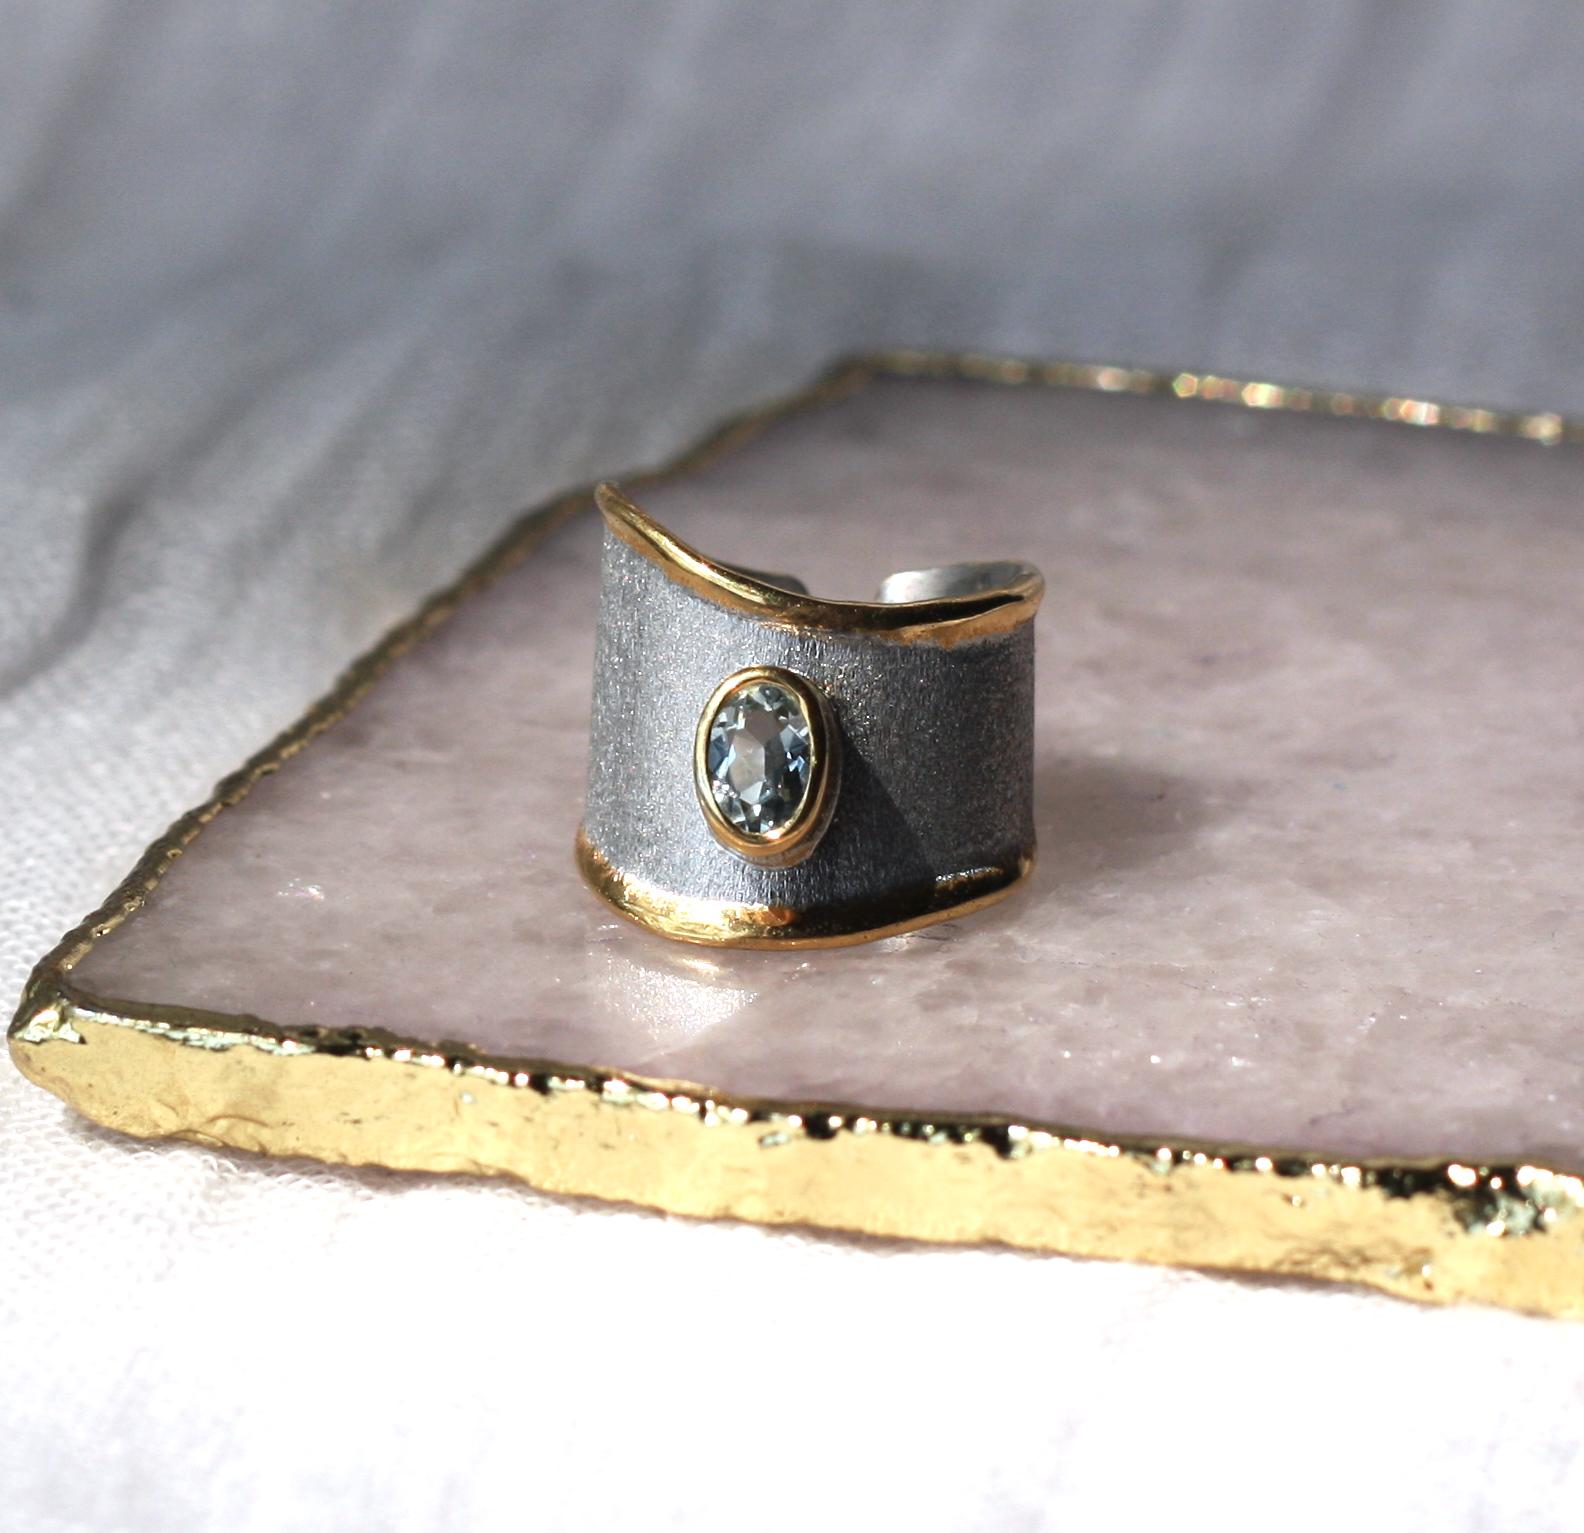 Der handgefertigte Ring der Midas Collection von Yianni Creations besteht aus feinem 950er Silber, das mit Palladium überzogen ist, um den Elementen zu widerstehen, und wird nach Maß gefertigt. Die Flüssigkeitsränder sind mit einem Overlay aus 24